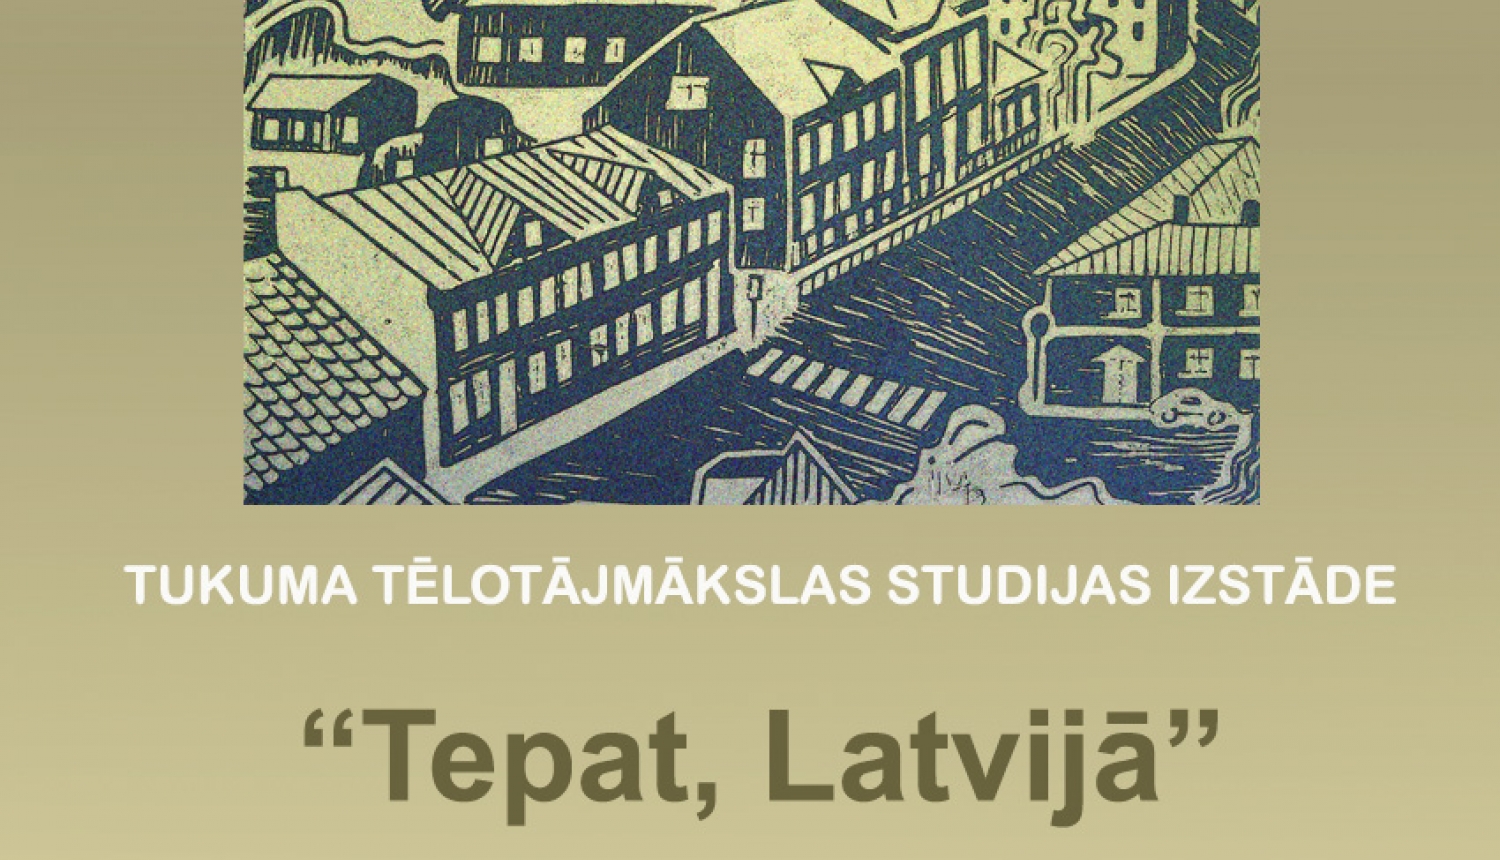 Tukuma Tēlotājmakslas studijas izstāde "Tepat, Latvijā"